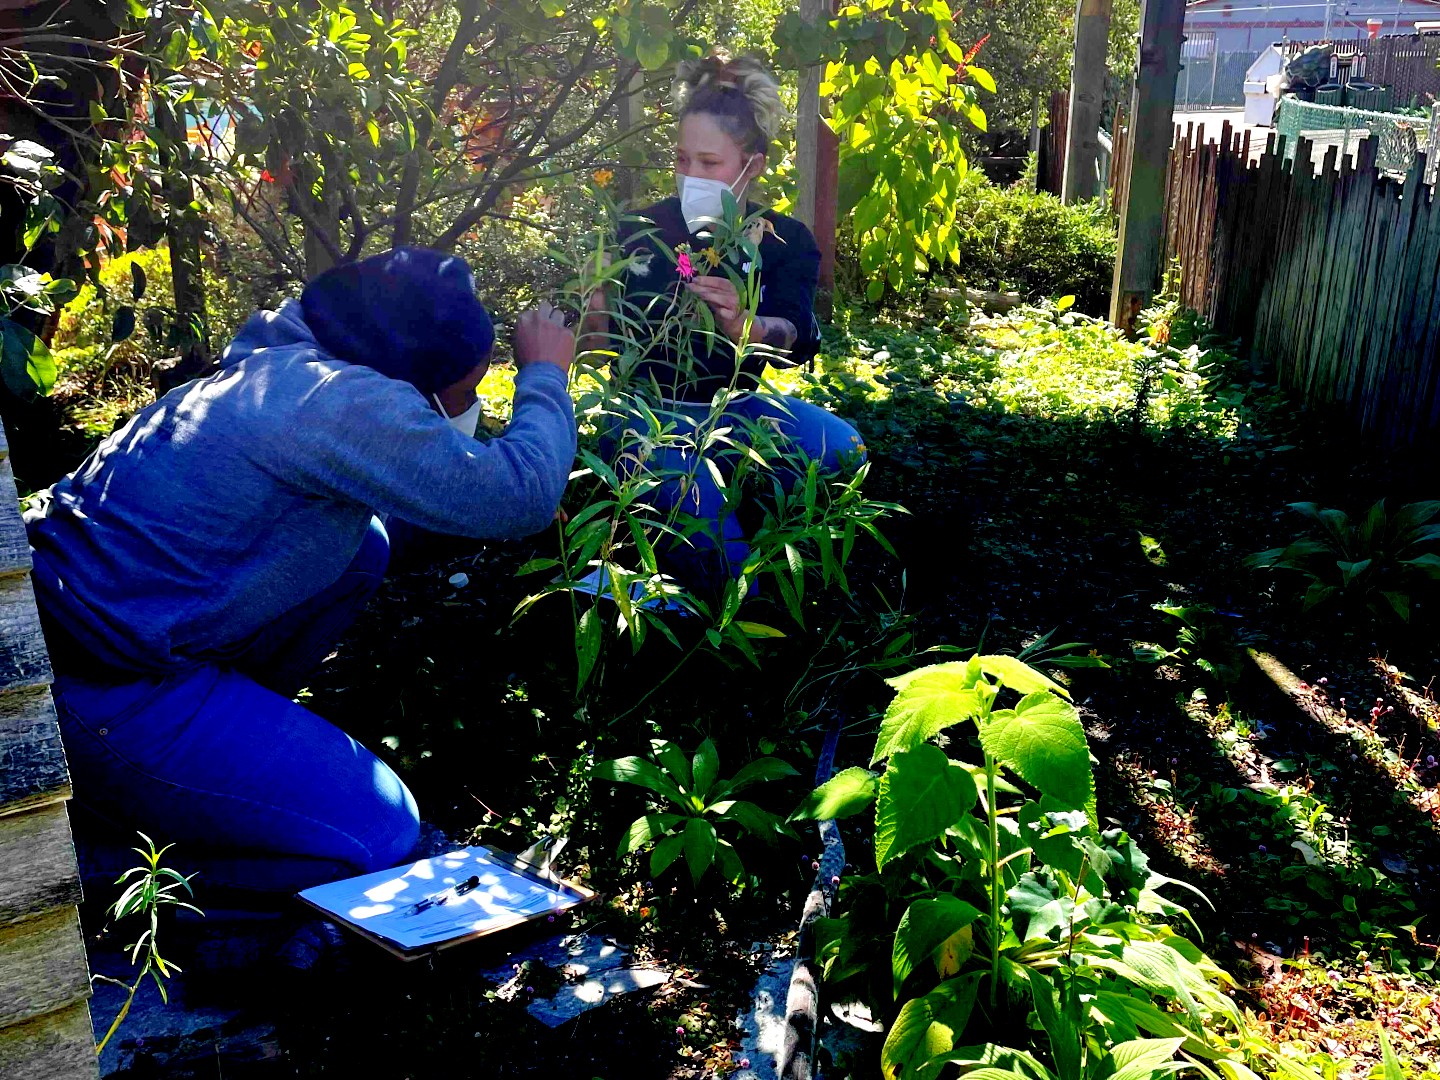 Two women wearing masks search a verdant green bush for monarch eggs.